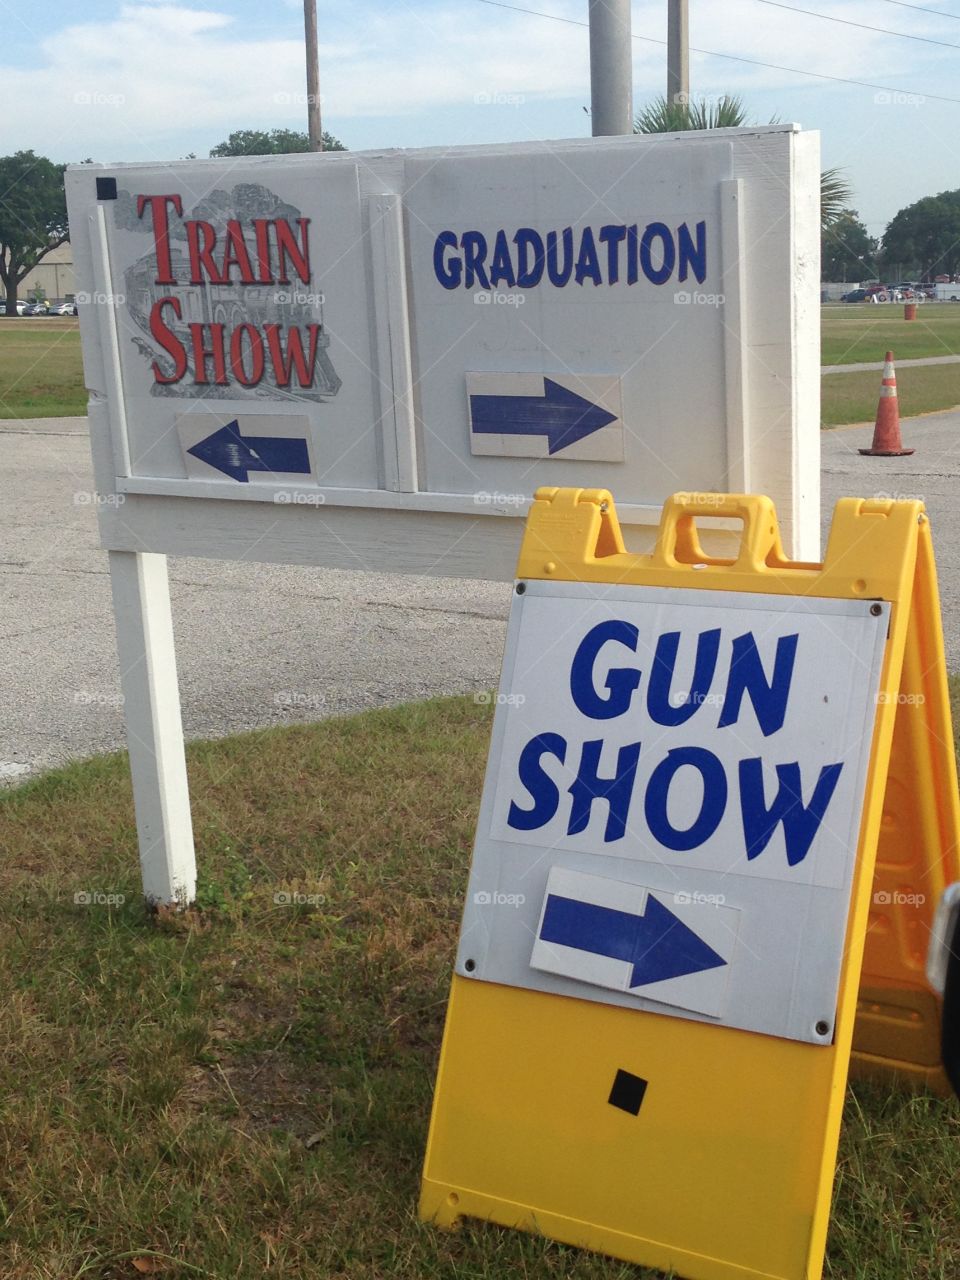 Gun show graduation train show signs